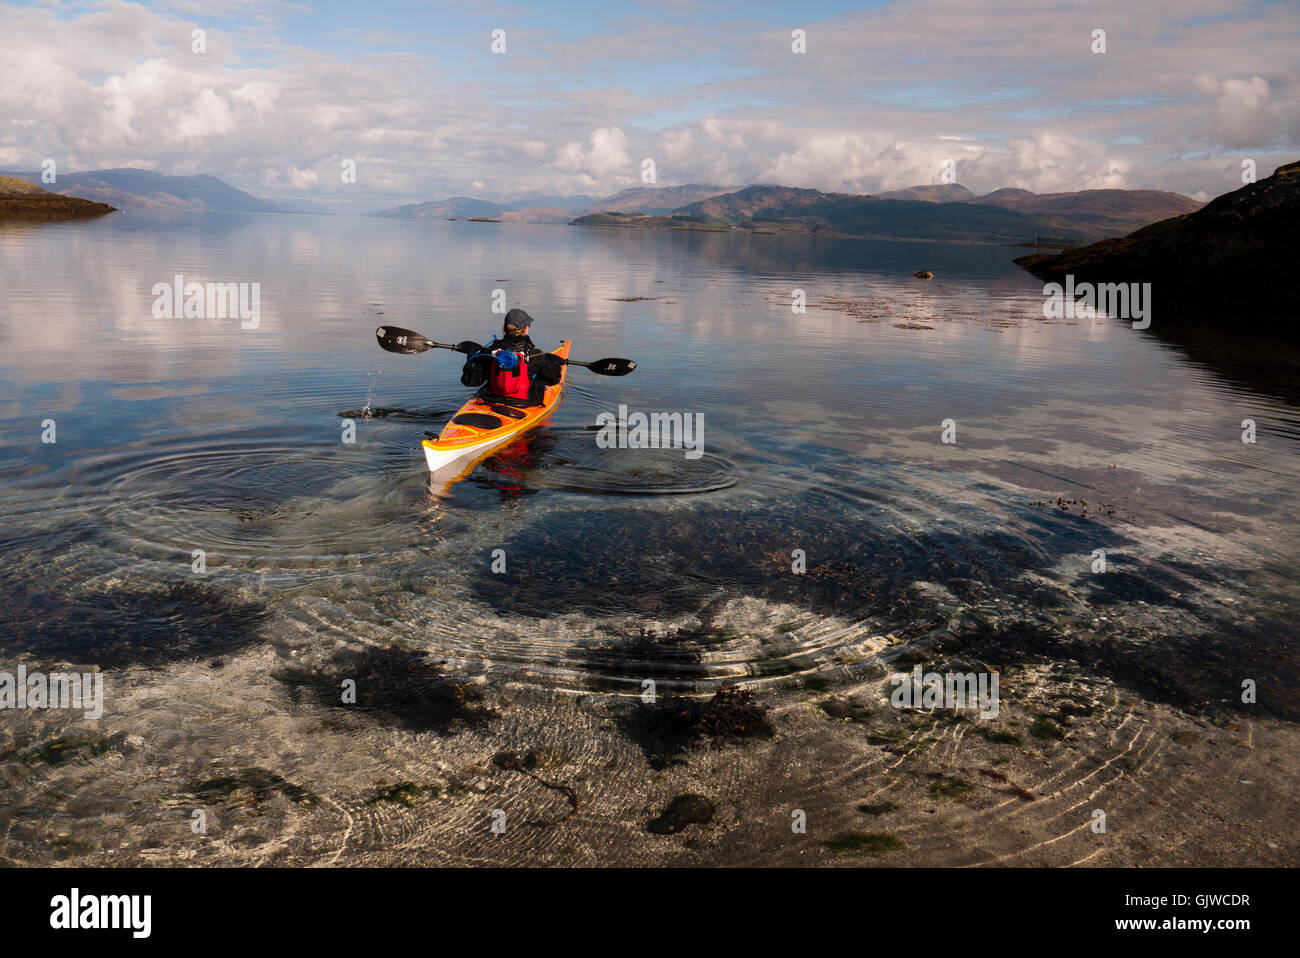 Un kayakiste de mer dans une baie isolée sur l'île de Lismore dans les Hébrides intérieures de l'ouest de l'Écosse. Banque D'Images